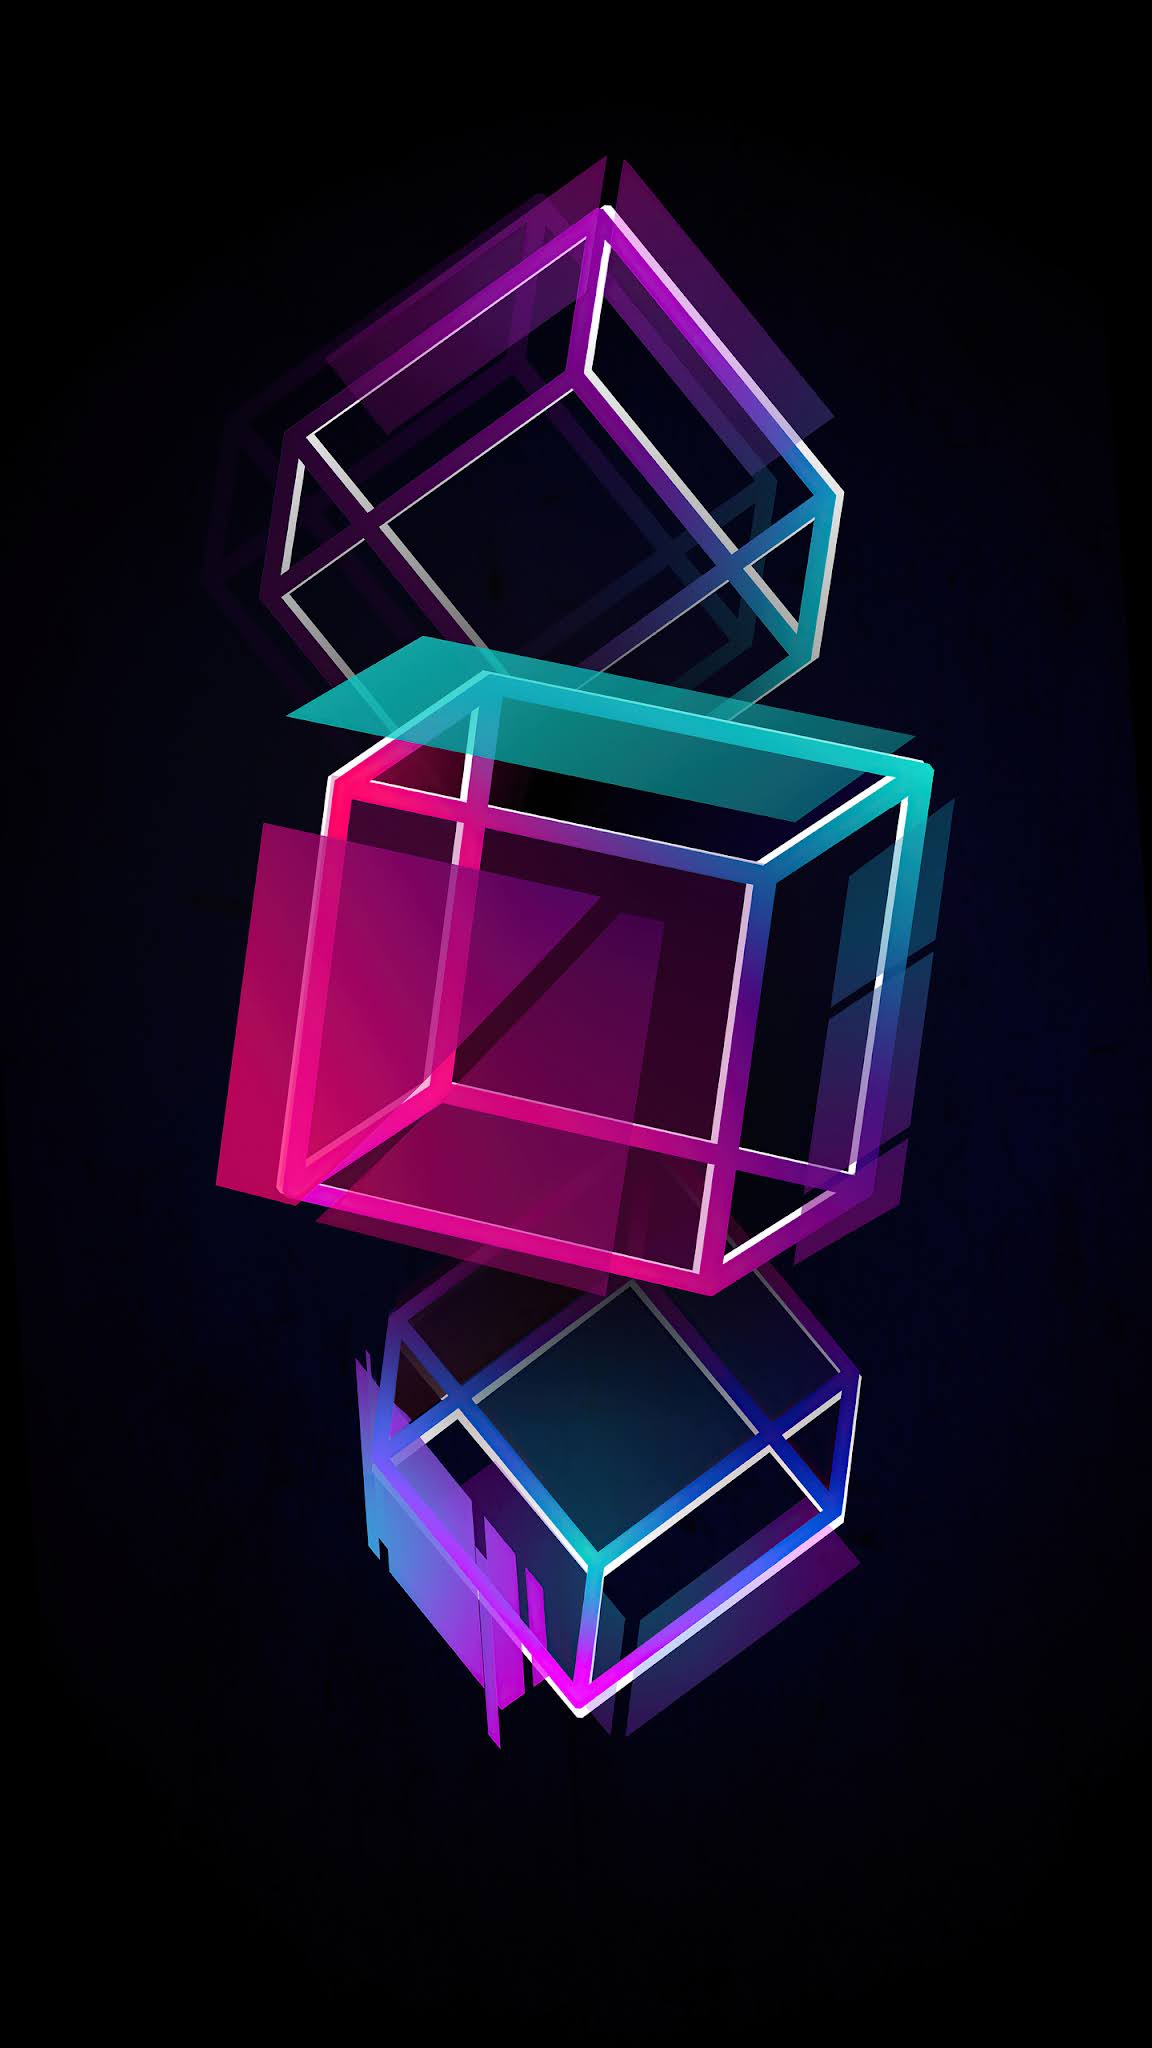 500 Cube Ảnh Hình Nền Background Đẹp Nhất Miễn Phí Dành Cho Bạn Tải Về  Cube Tại Zicxa Photos